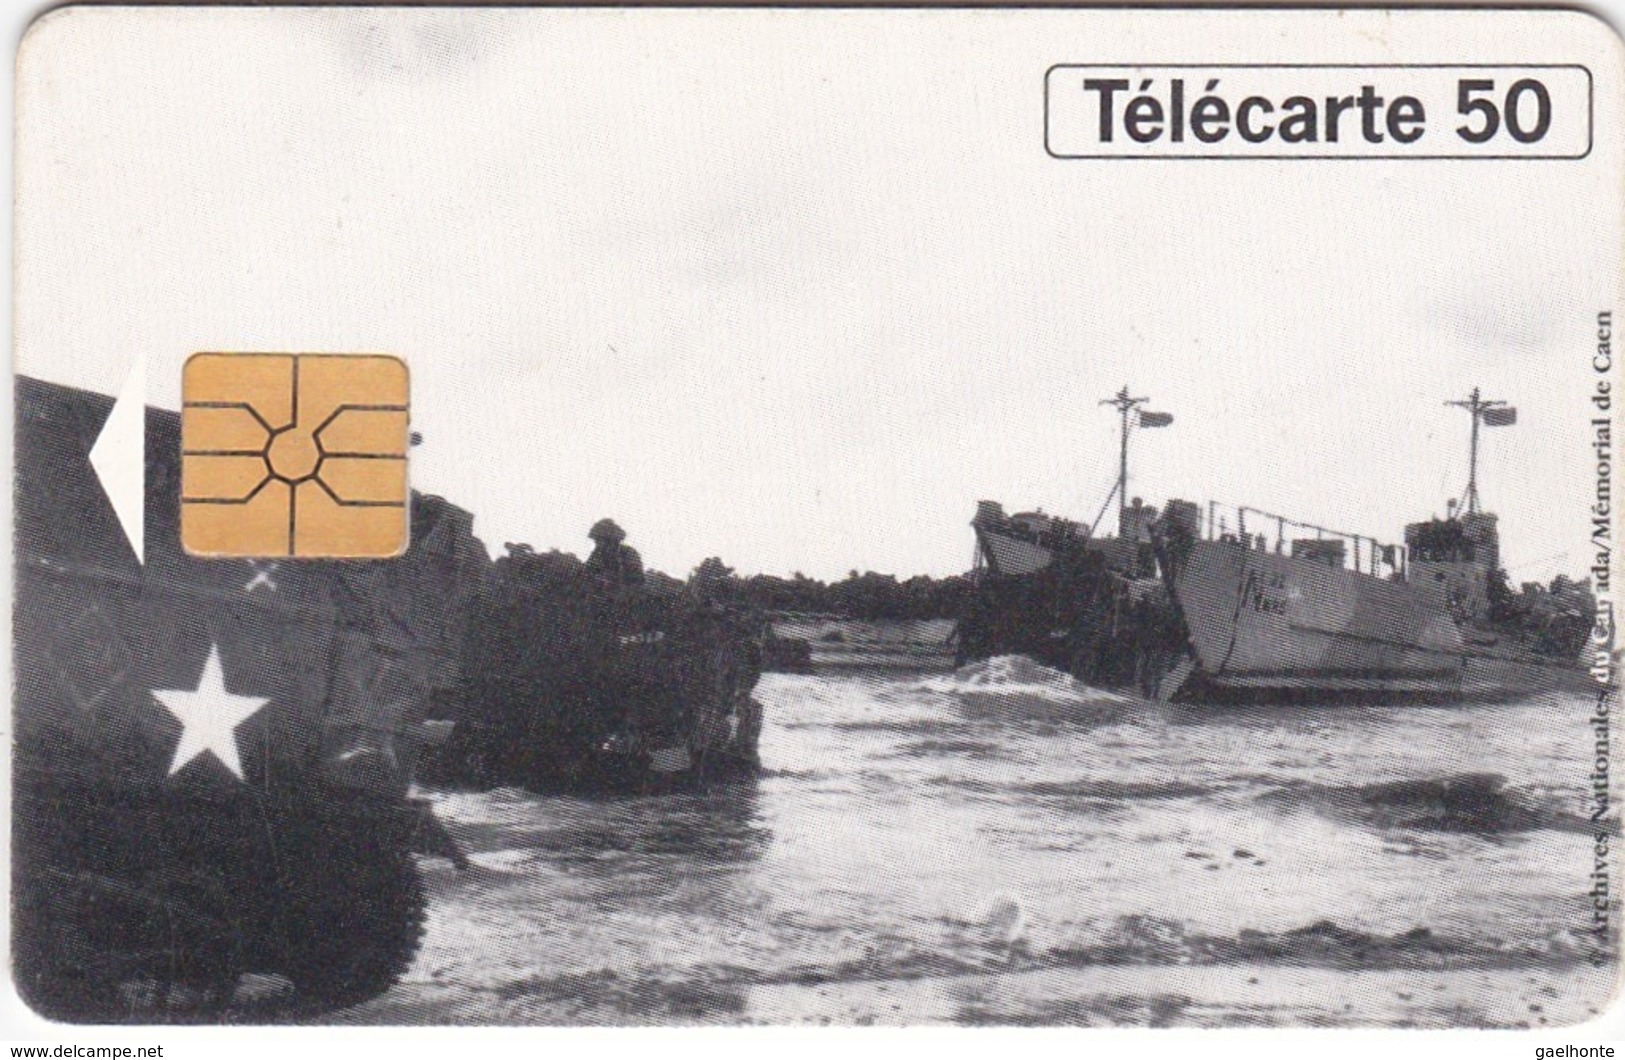 TC120 TÉLÉCARTE 50 UNITÉS - 1944-1994 - 50ème ANNIVERSAIRE DES DEBARQUEMENTS... - BERNIERES SUR MER 06 JUIN 1944 - Armée